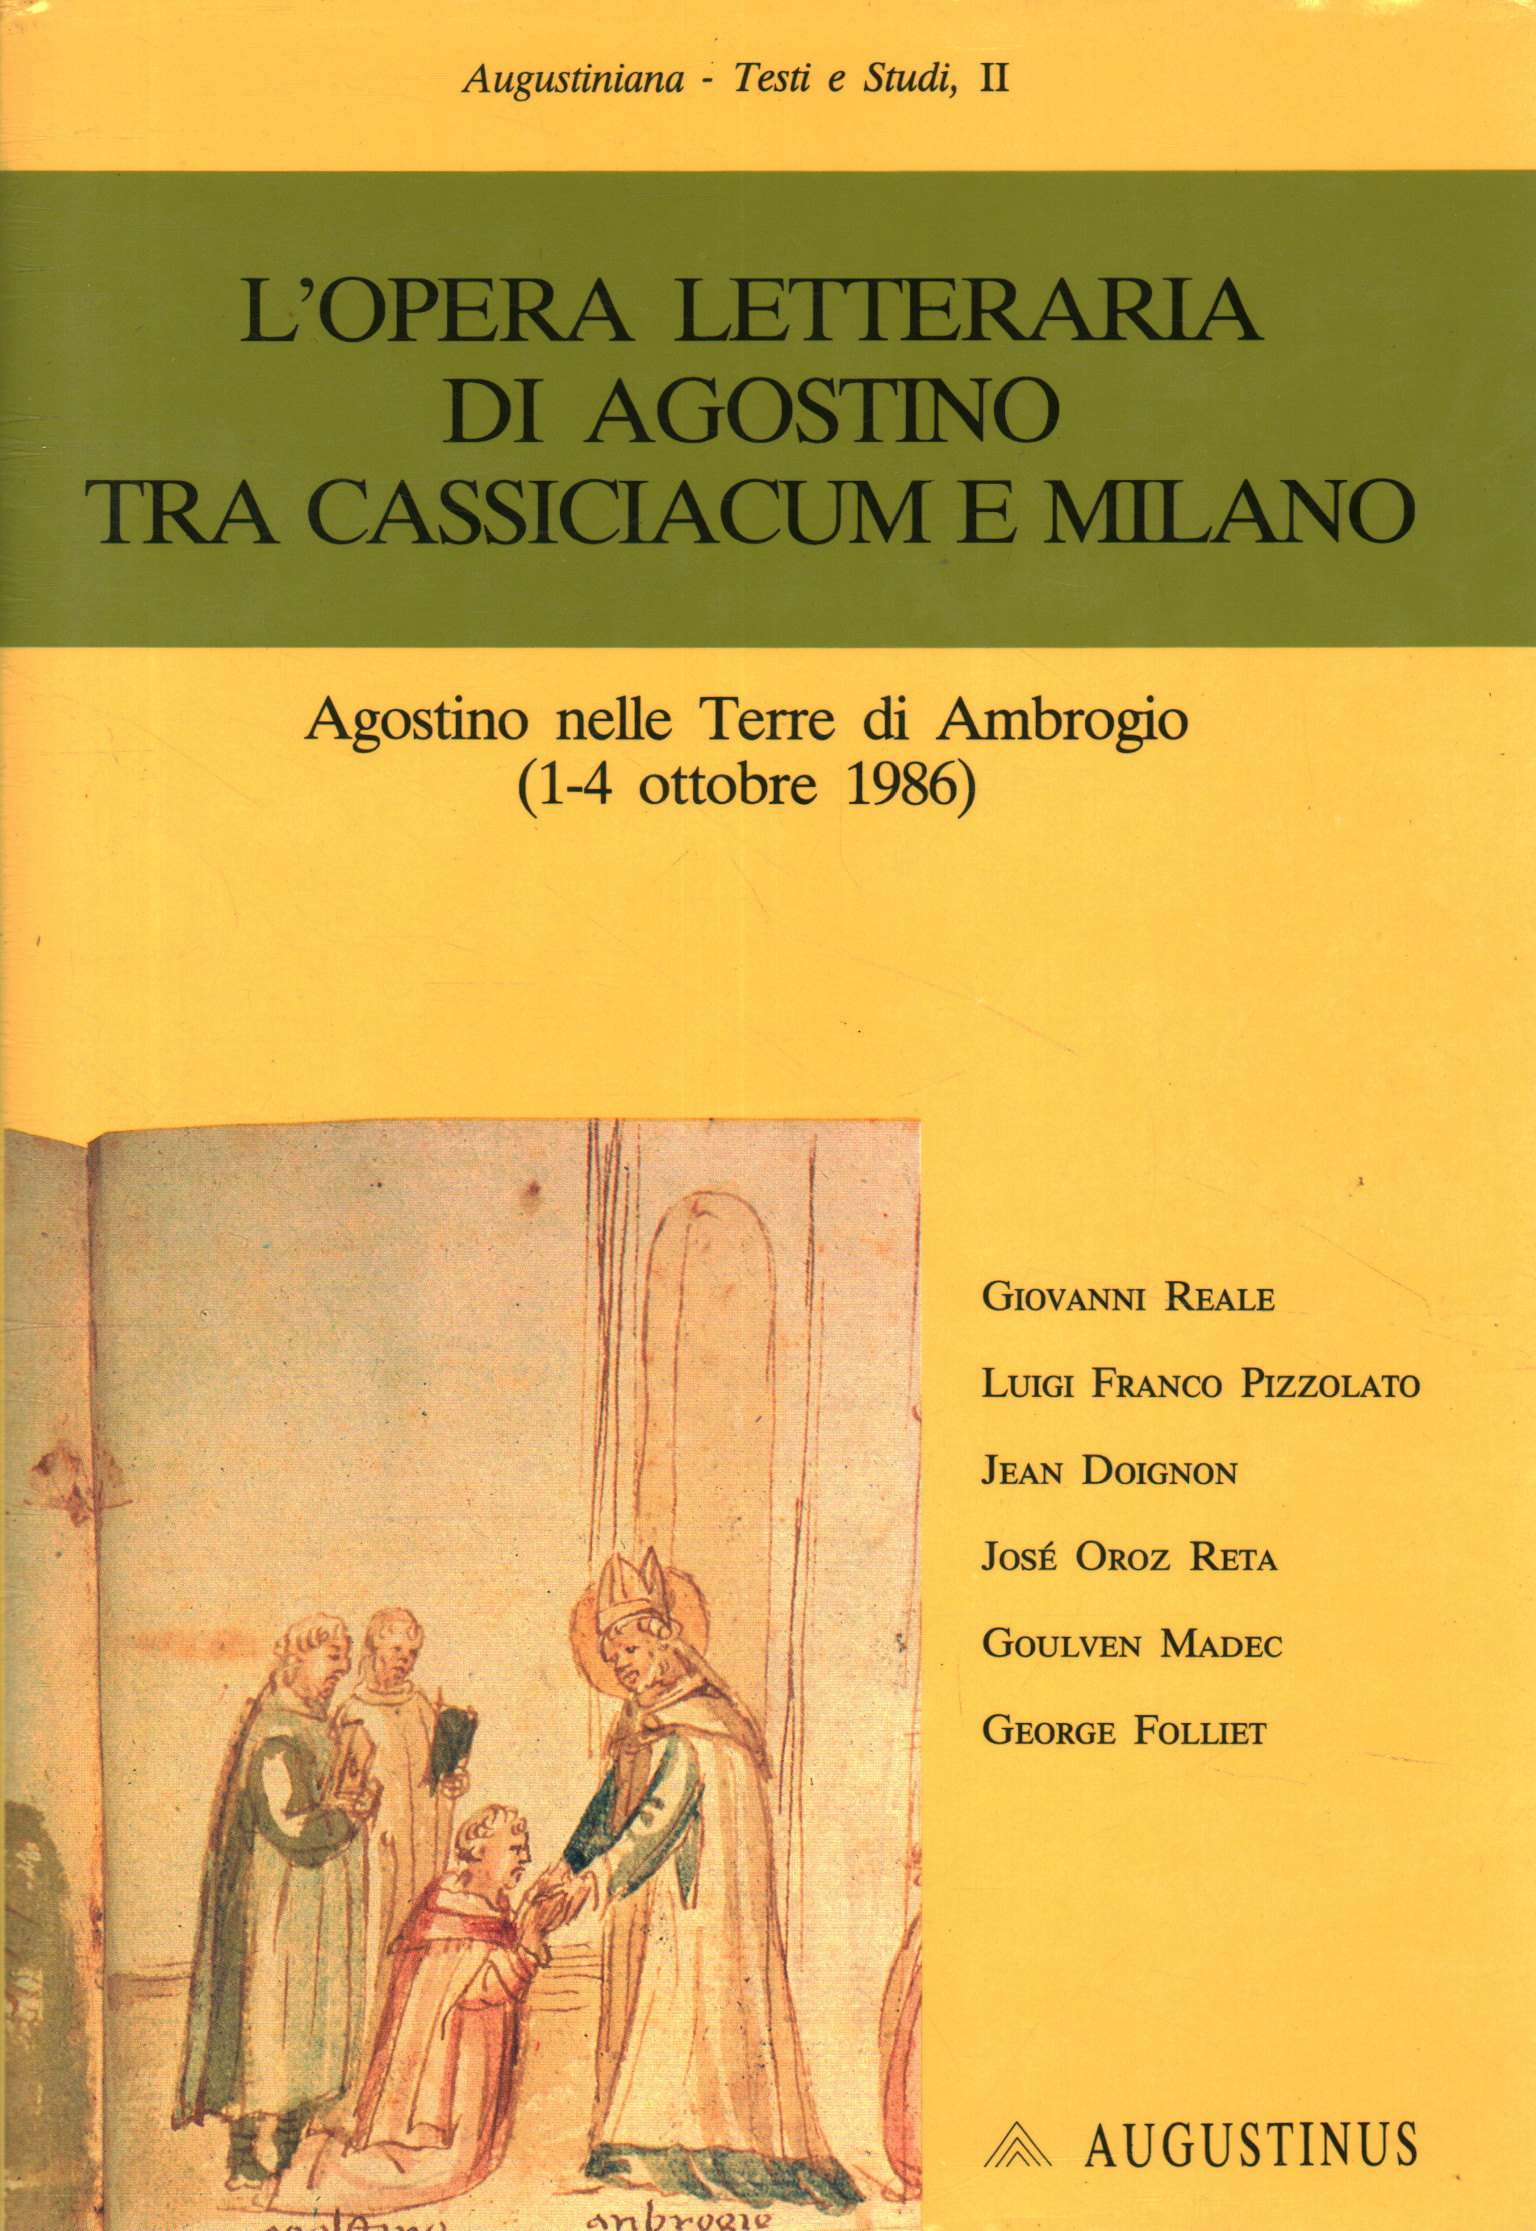 Augustine's literary work